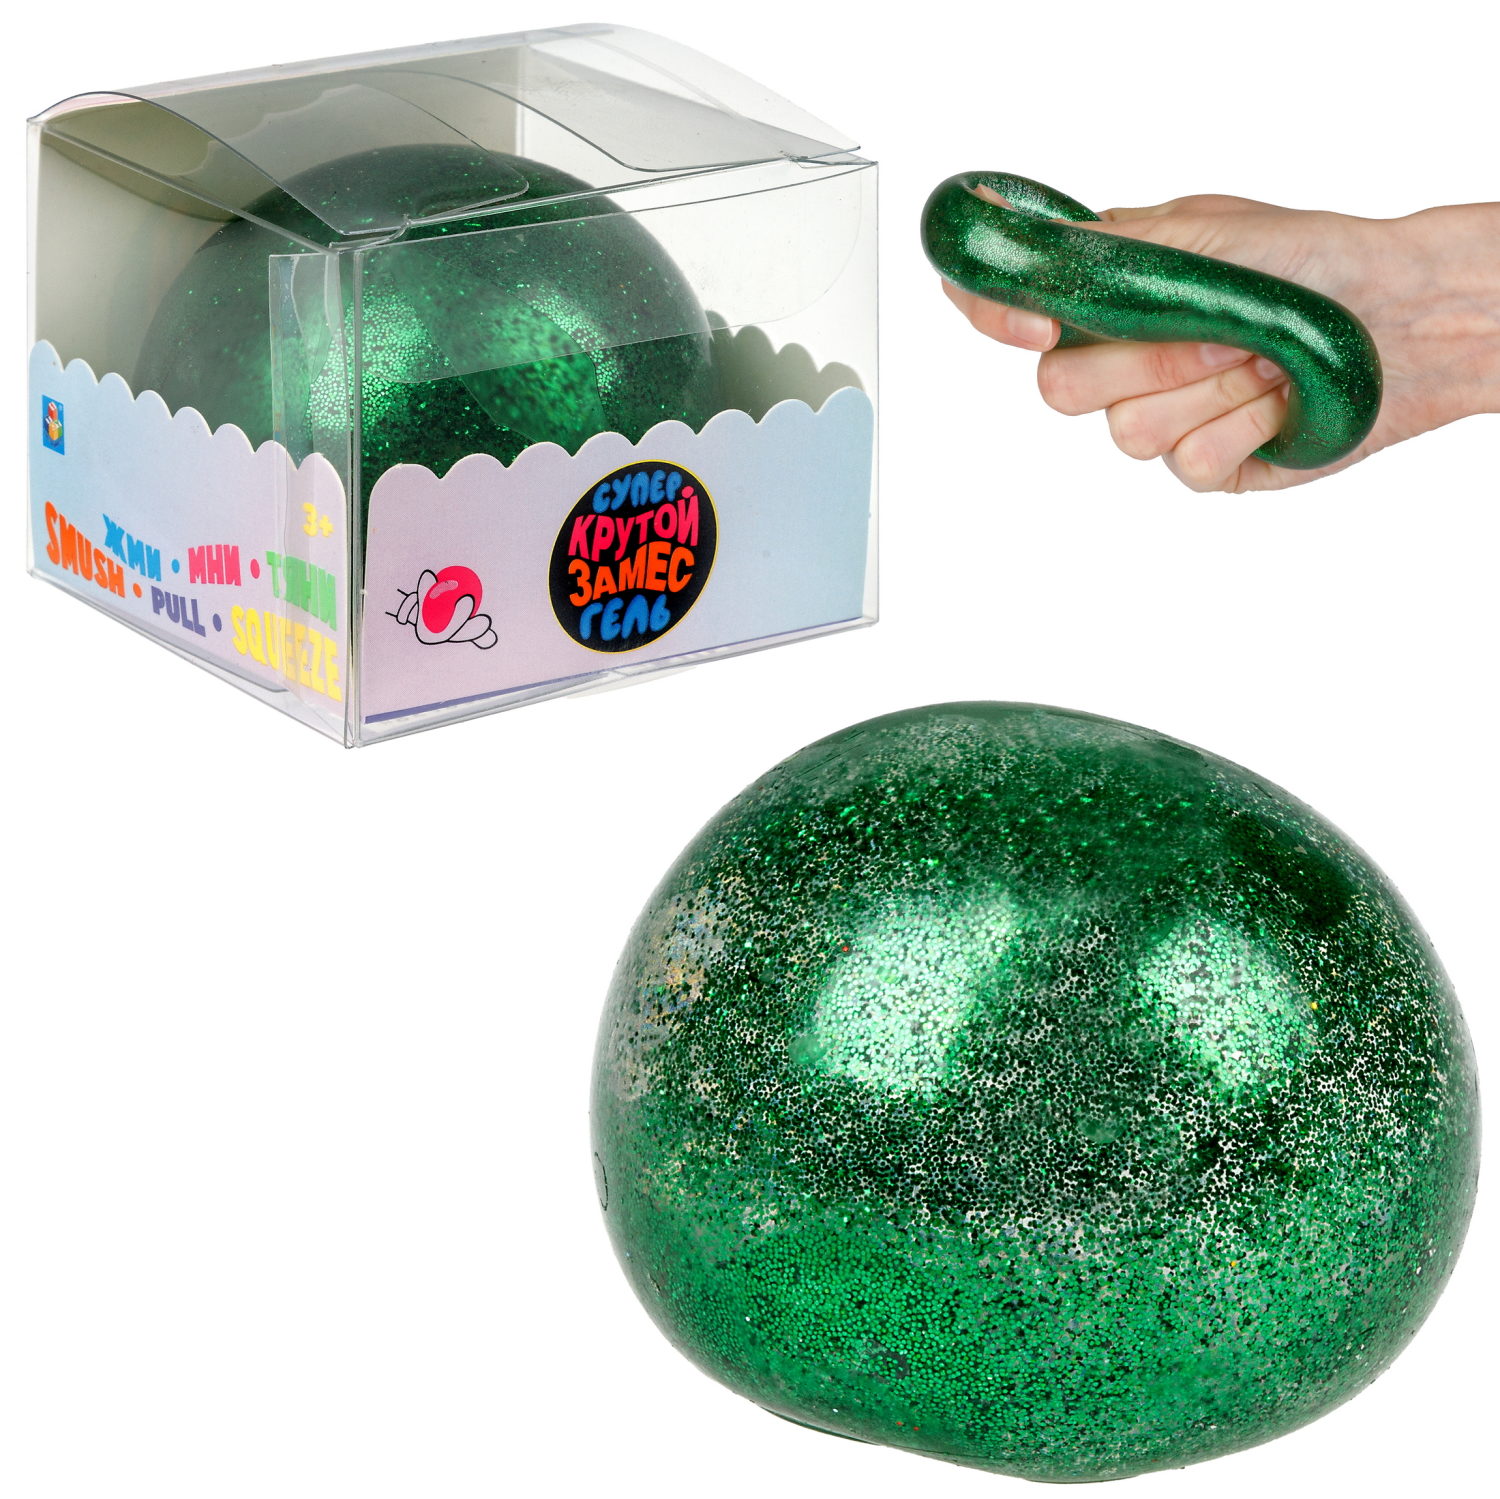 Игрушка-антистресс 1toy Крутой замес Супергель зелёный шар блестки 6см 1toy игрушка для пускания мыльных пузырей зелёный крокодил